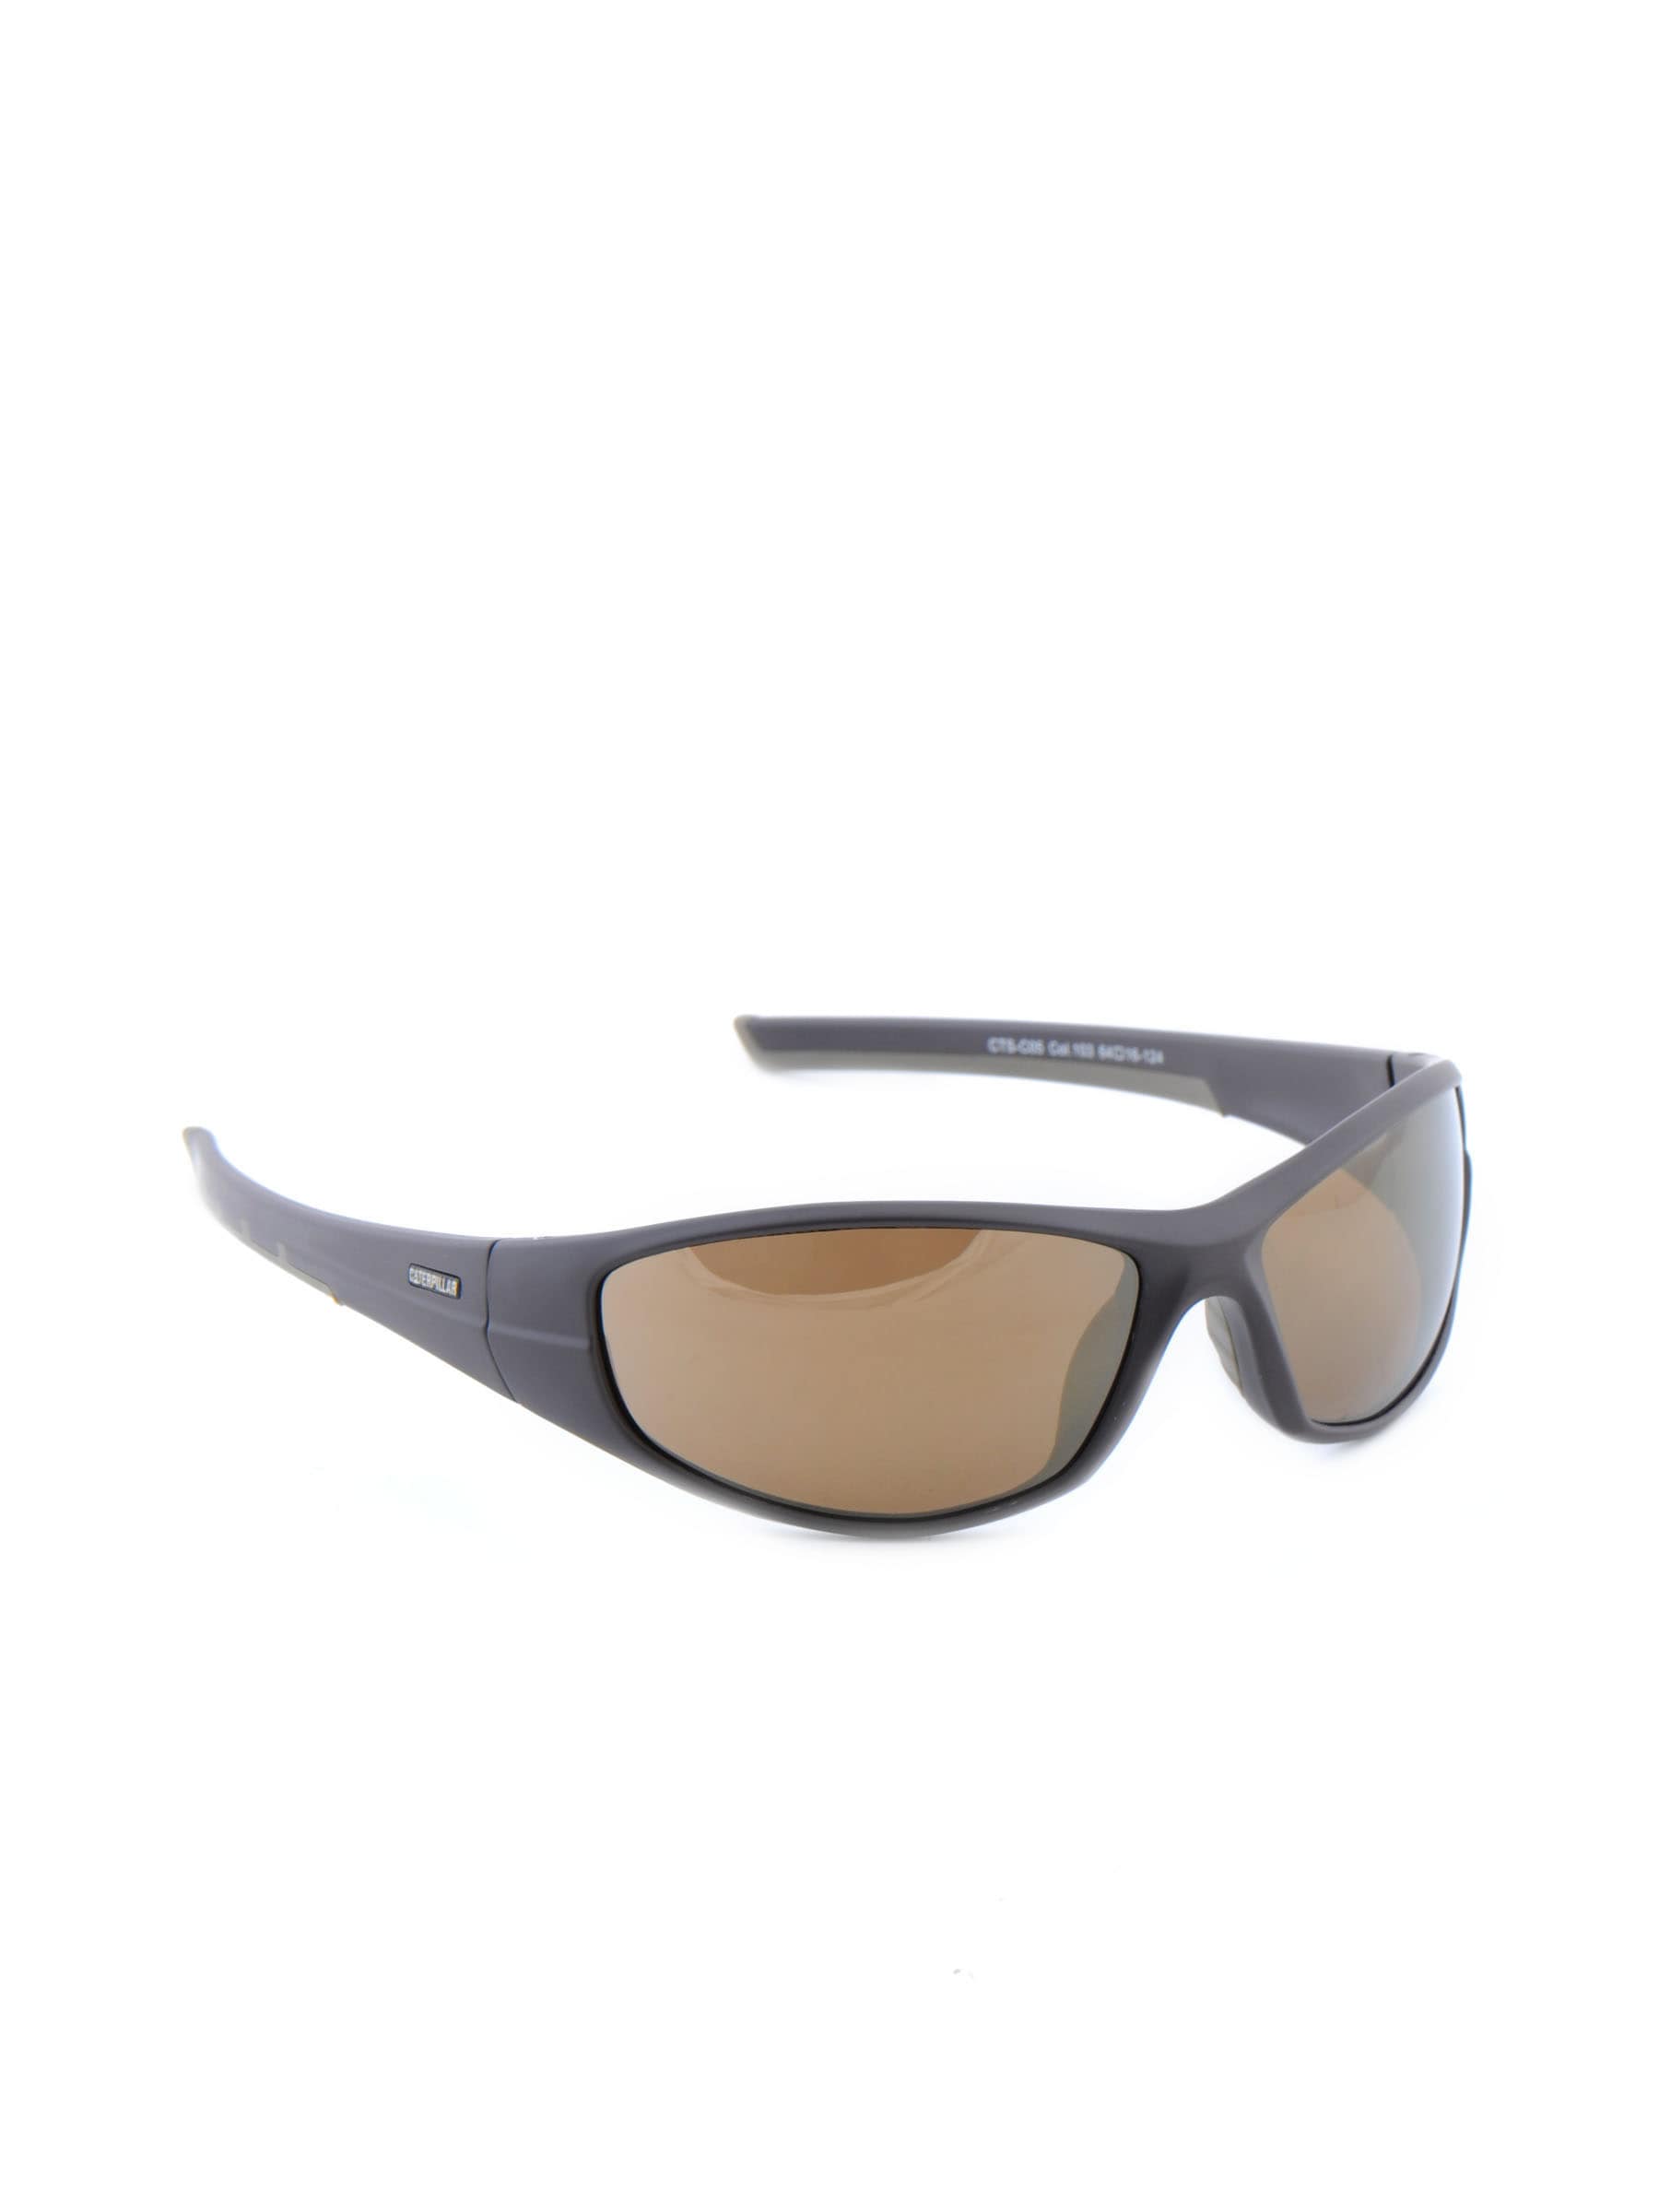 Cat Unisex Classic Brown Sunglasses